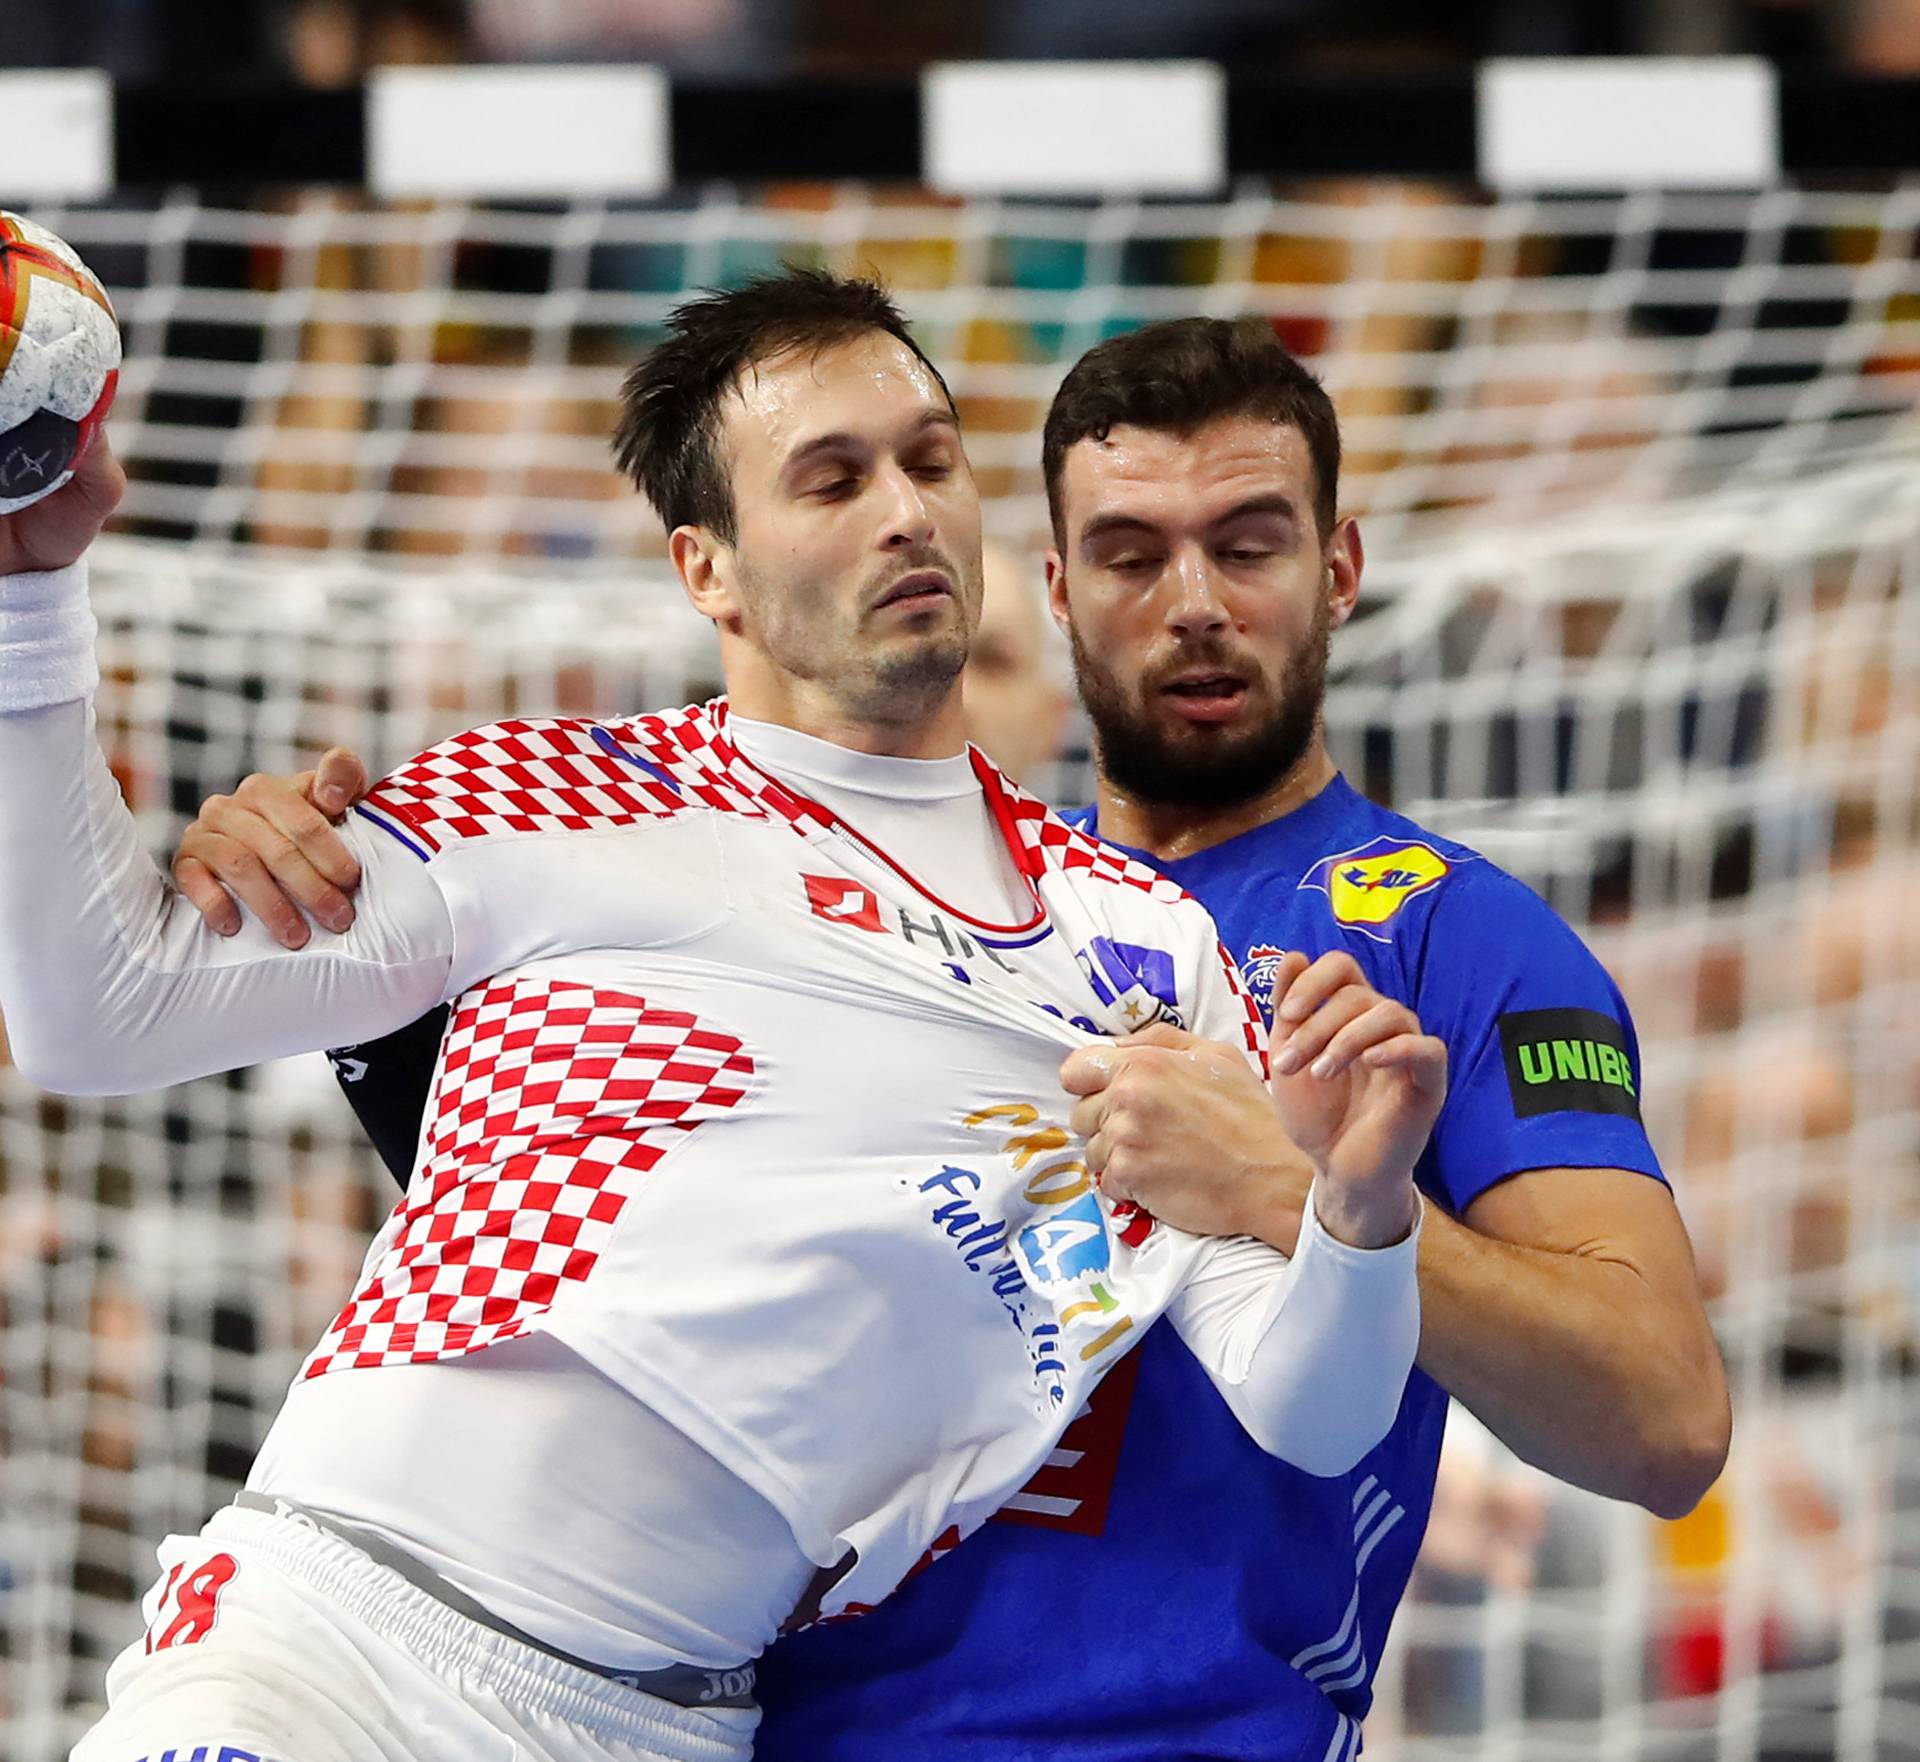 IHF Handball World Championship - Germany & Denmark 2019 - Main Round Group 1 - France v Croatia